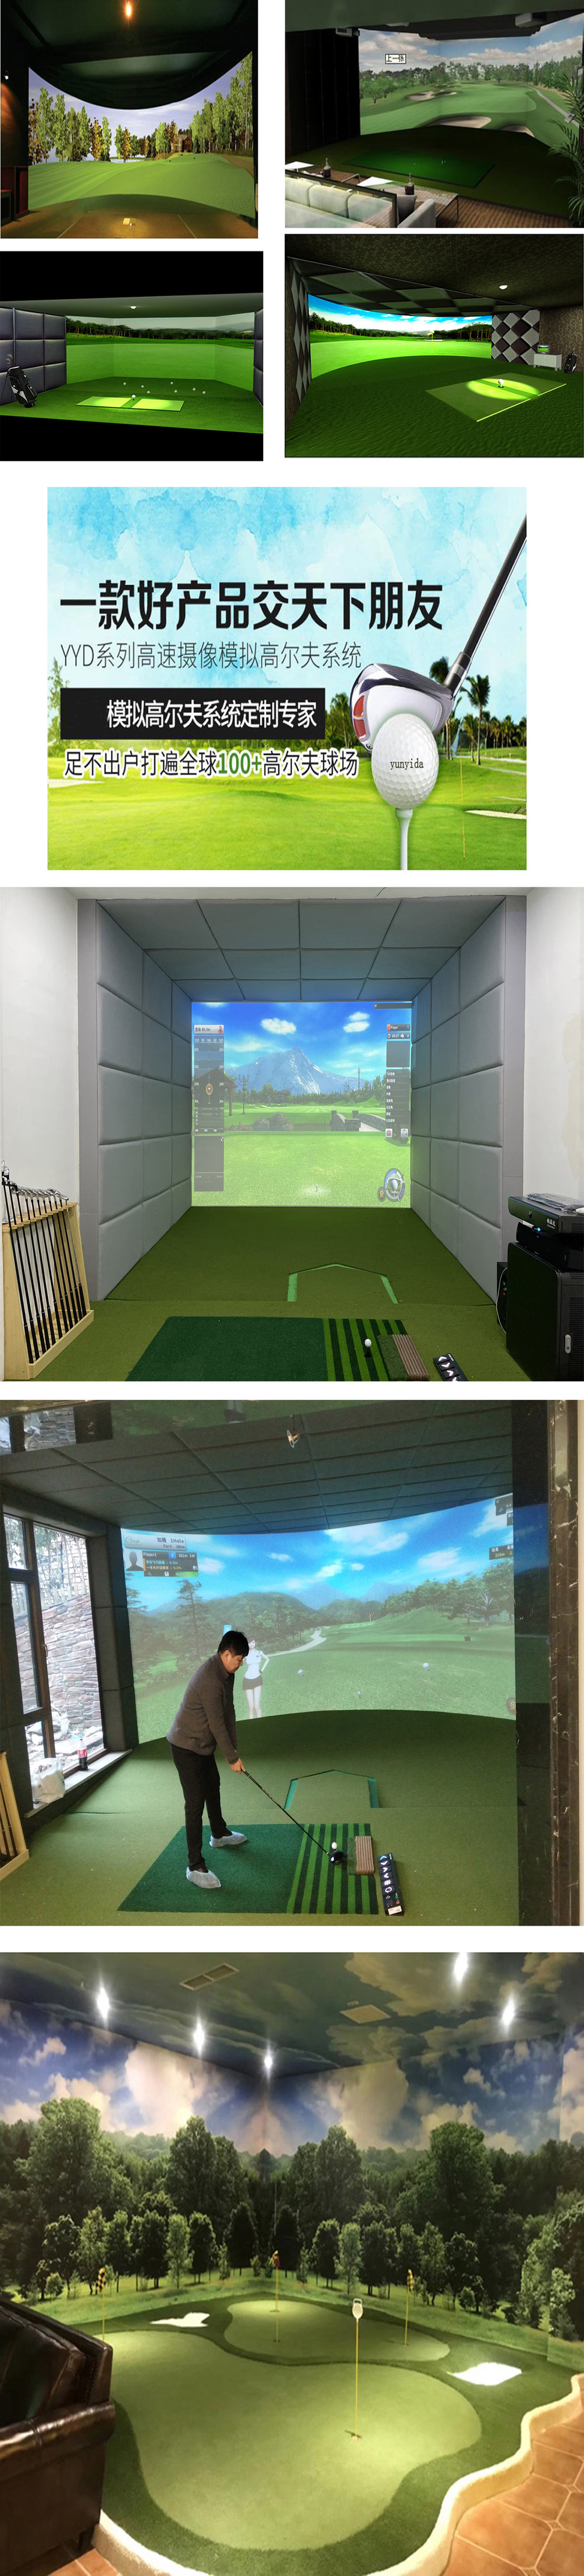 室内高尔夫模拟设备 04.jpg